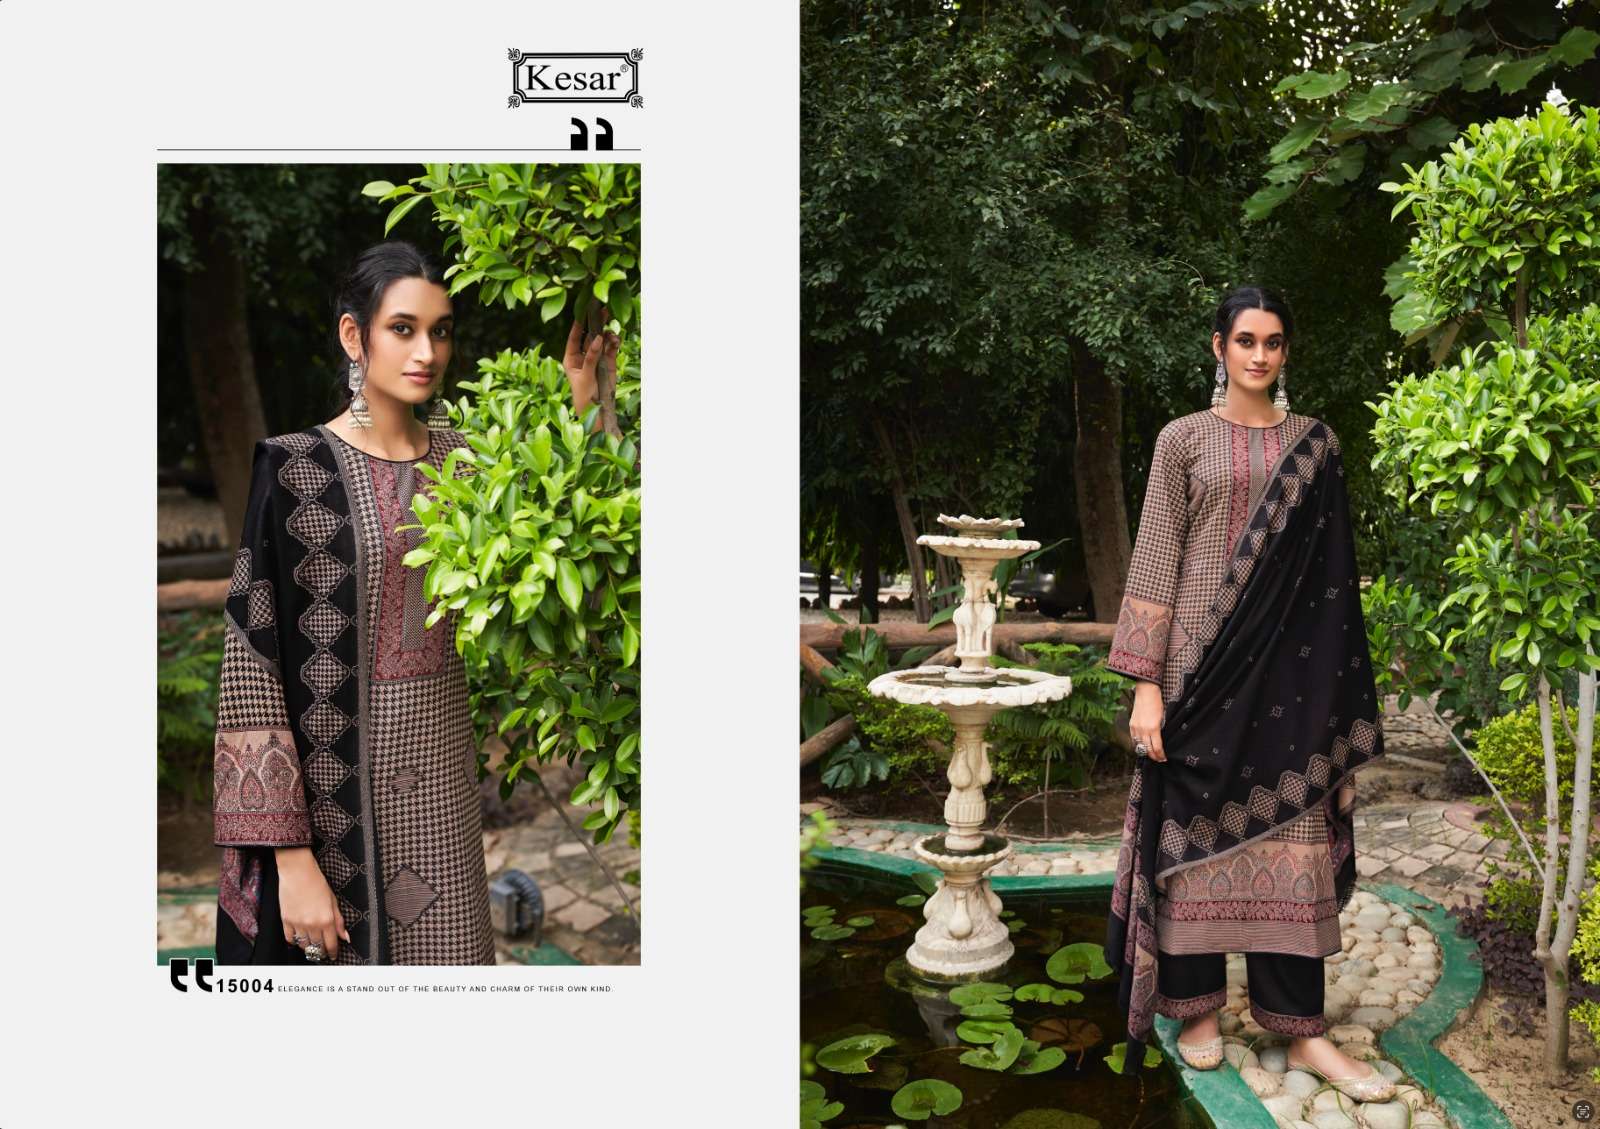 kesar palki 15001-15004 series designer look winter wear salwar kameez wholesale price surat